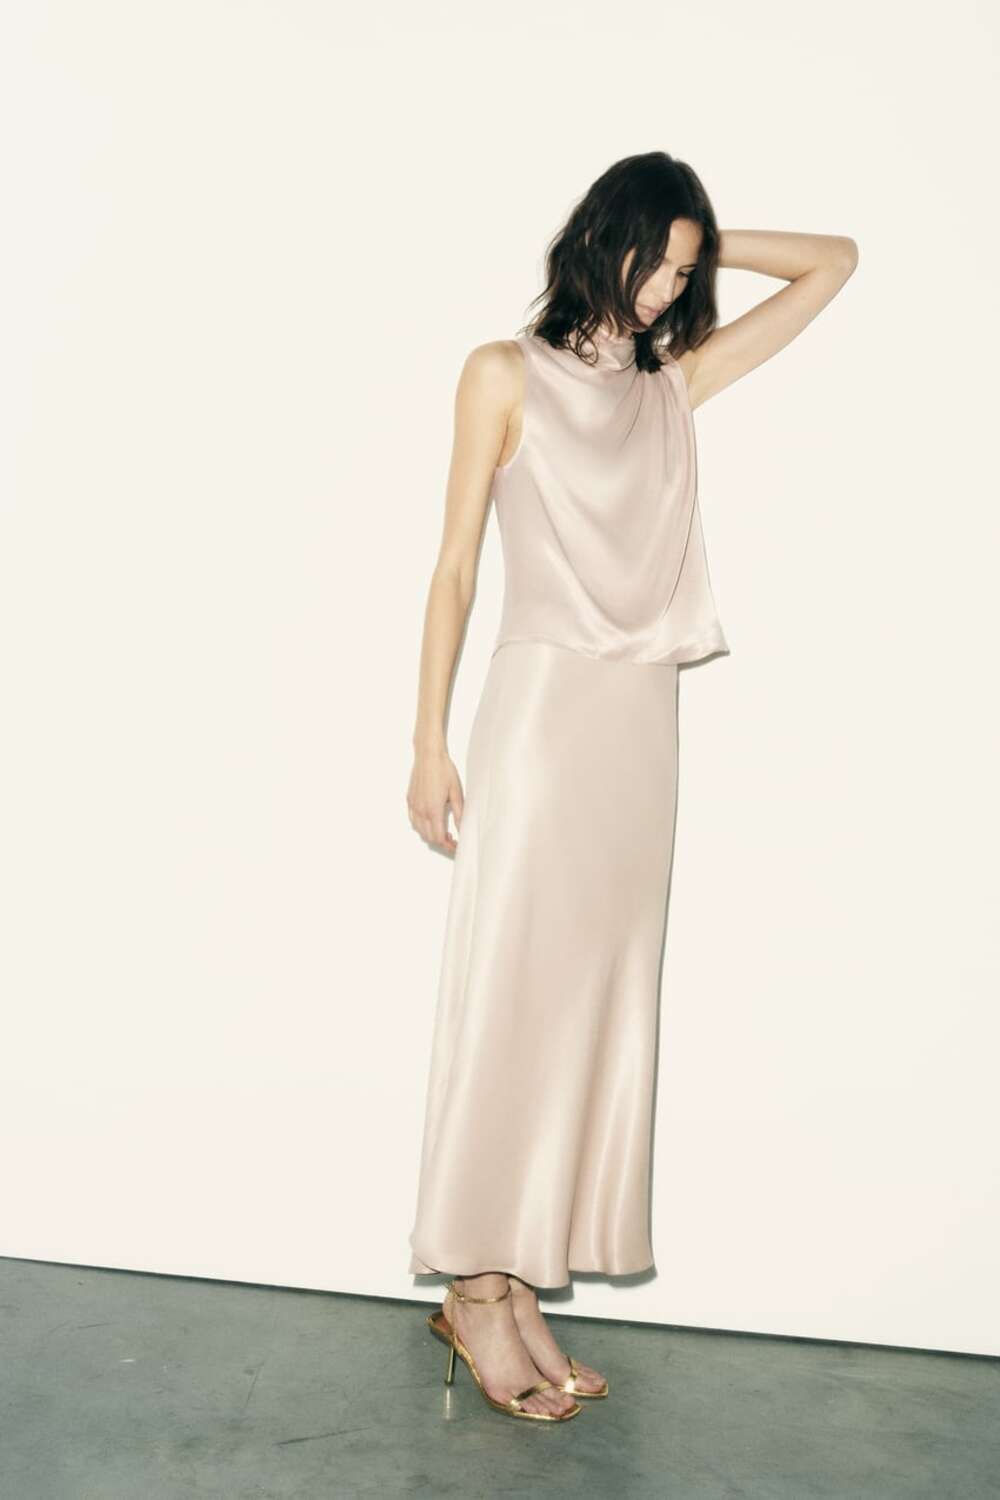 Bez satenska suknja Trend tihog luksuza sve više raste, a Zara ima idealne komade za to